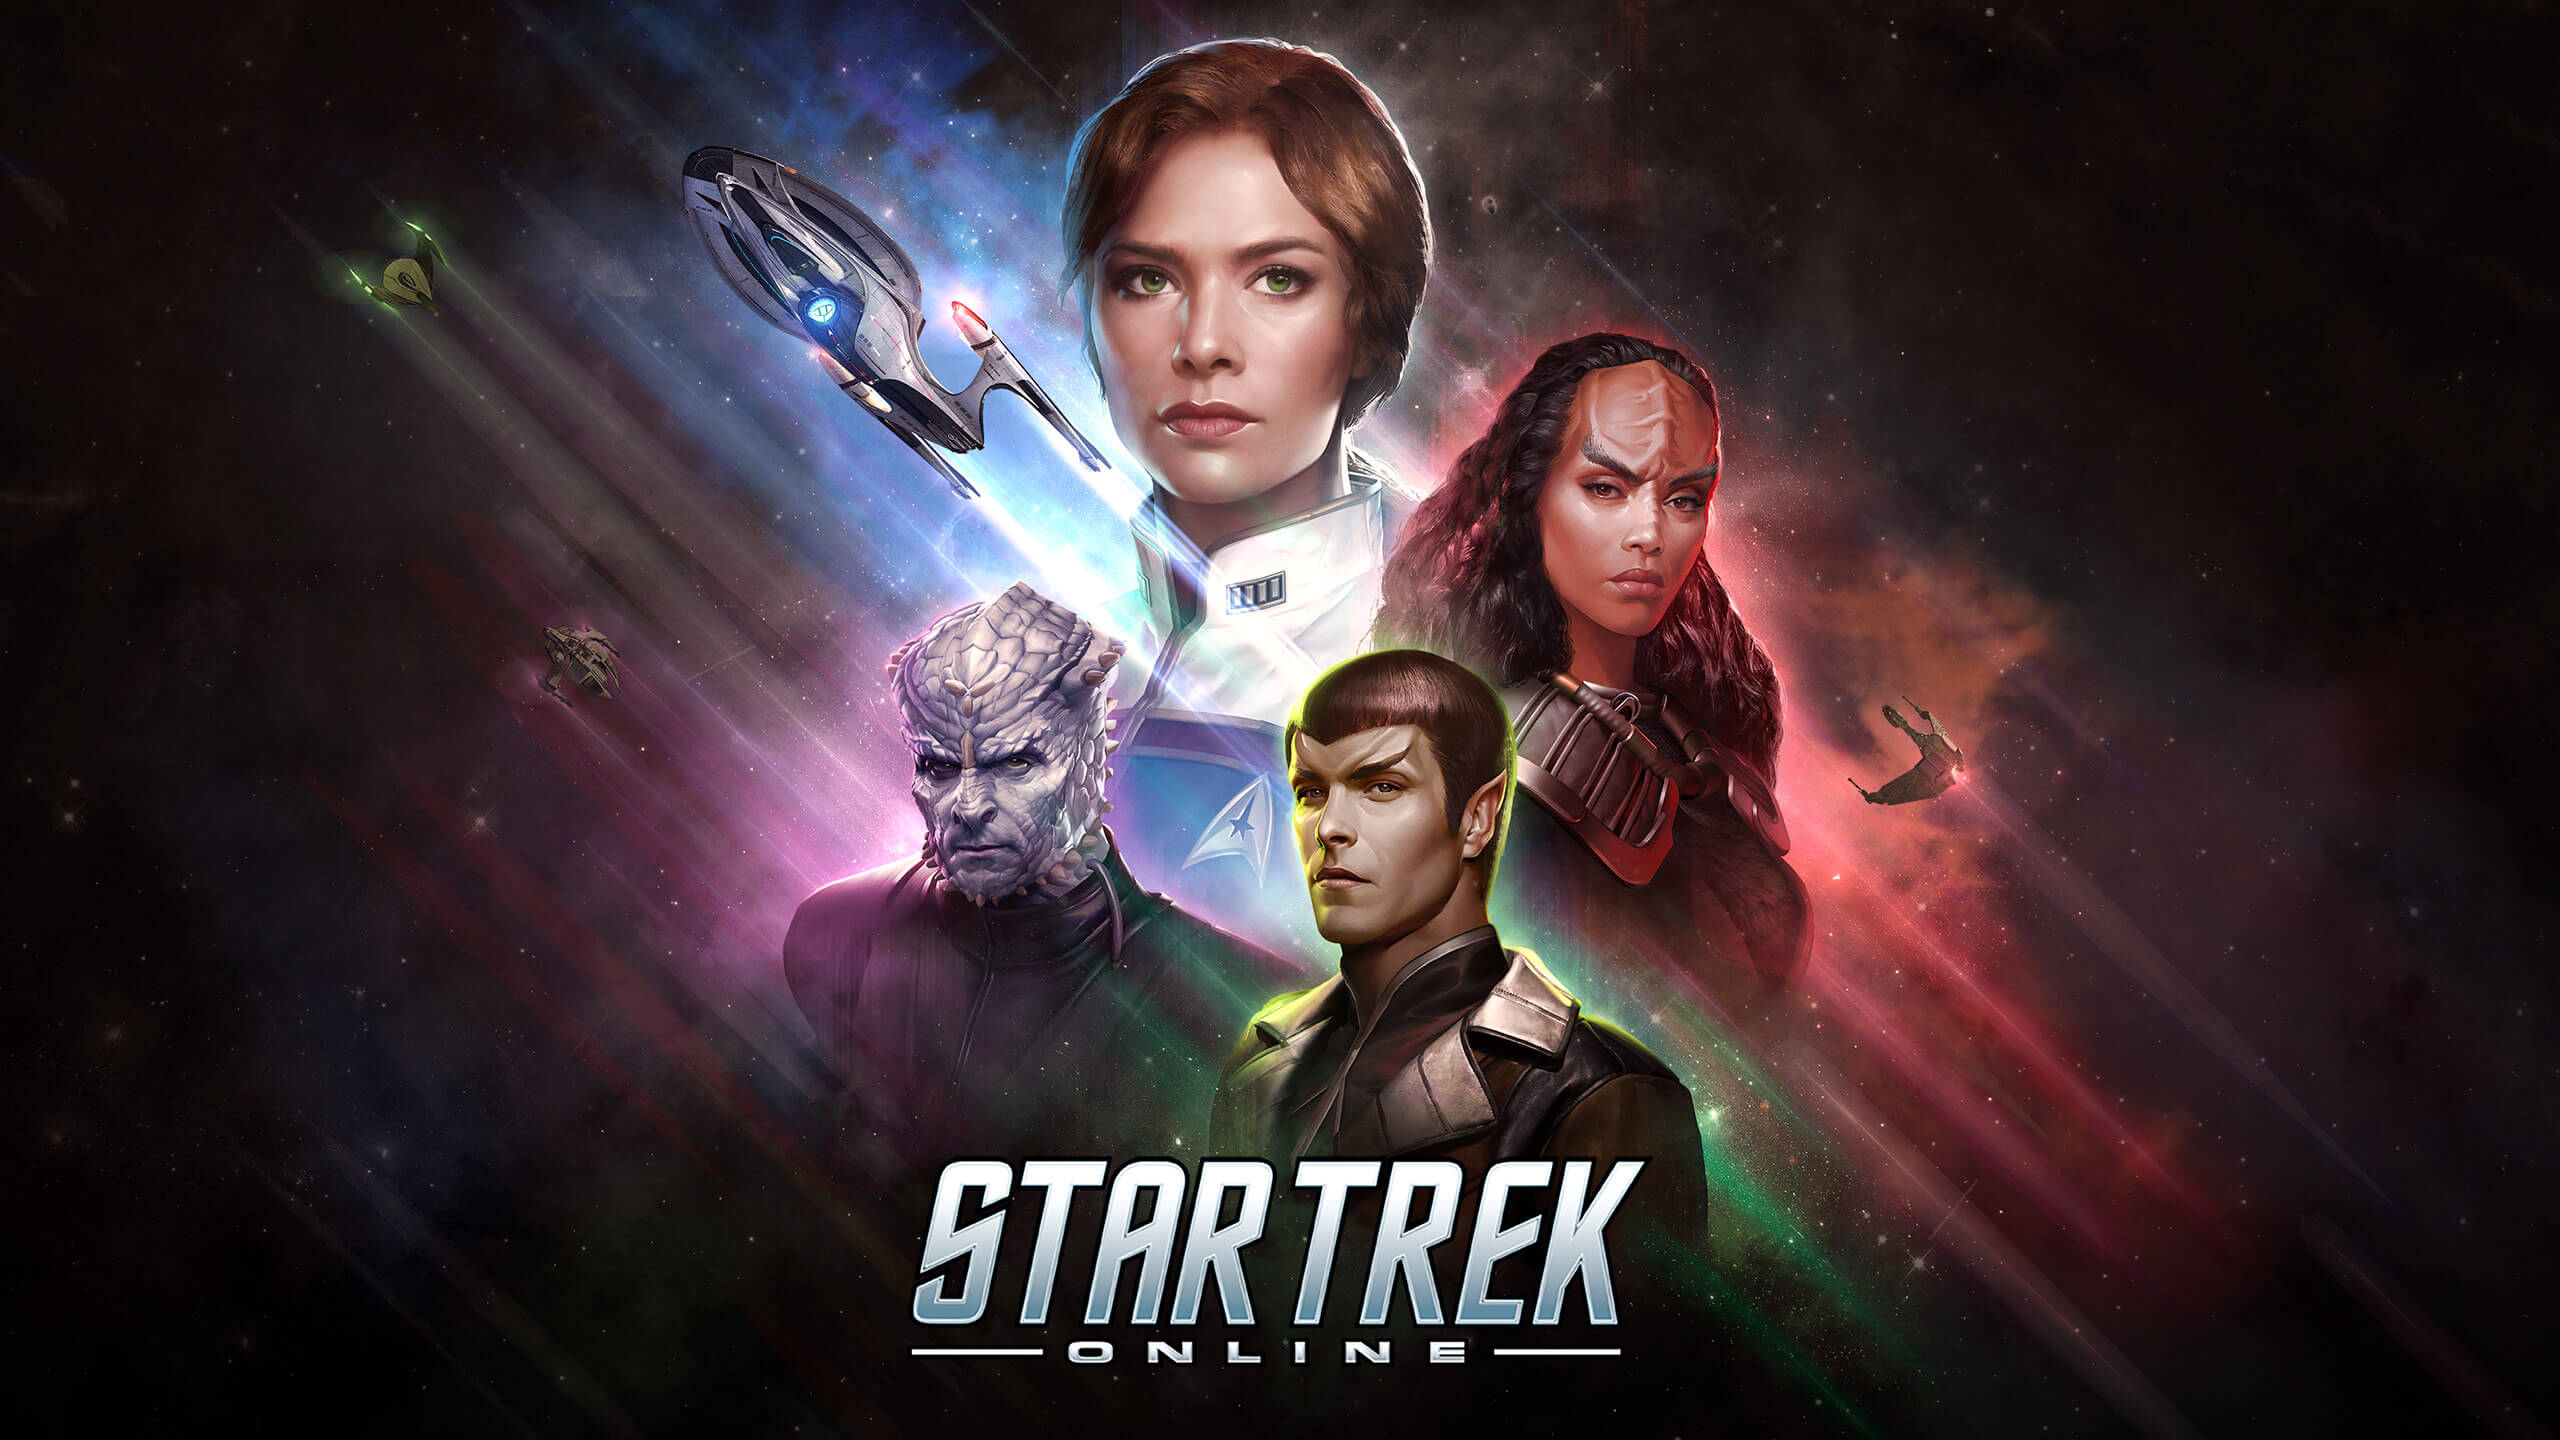 Star Trek Online Review: A classic, but still fun, MMORPG